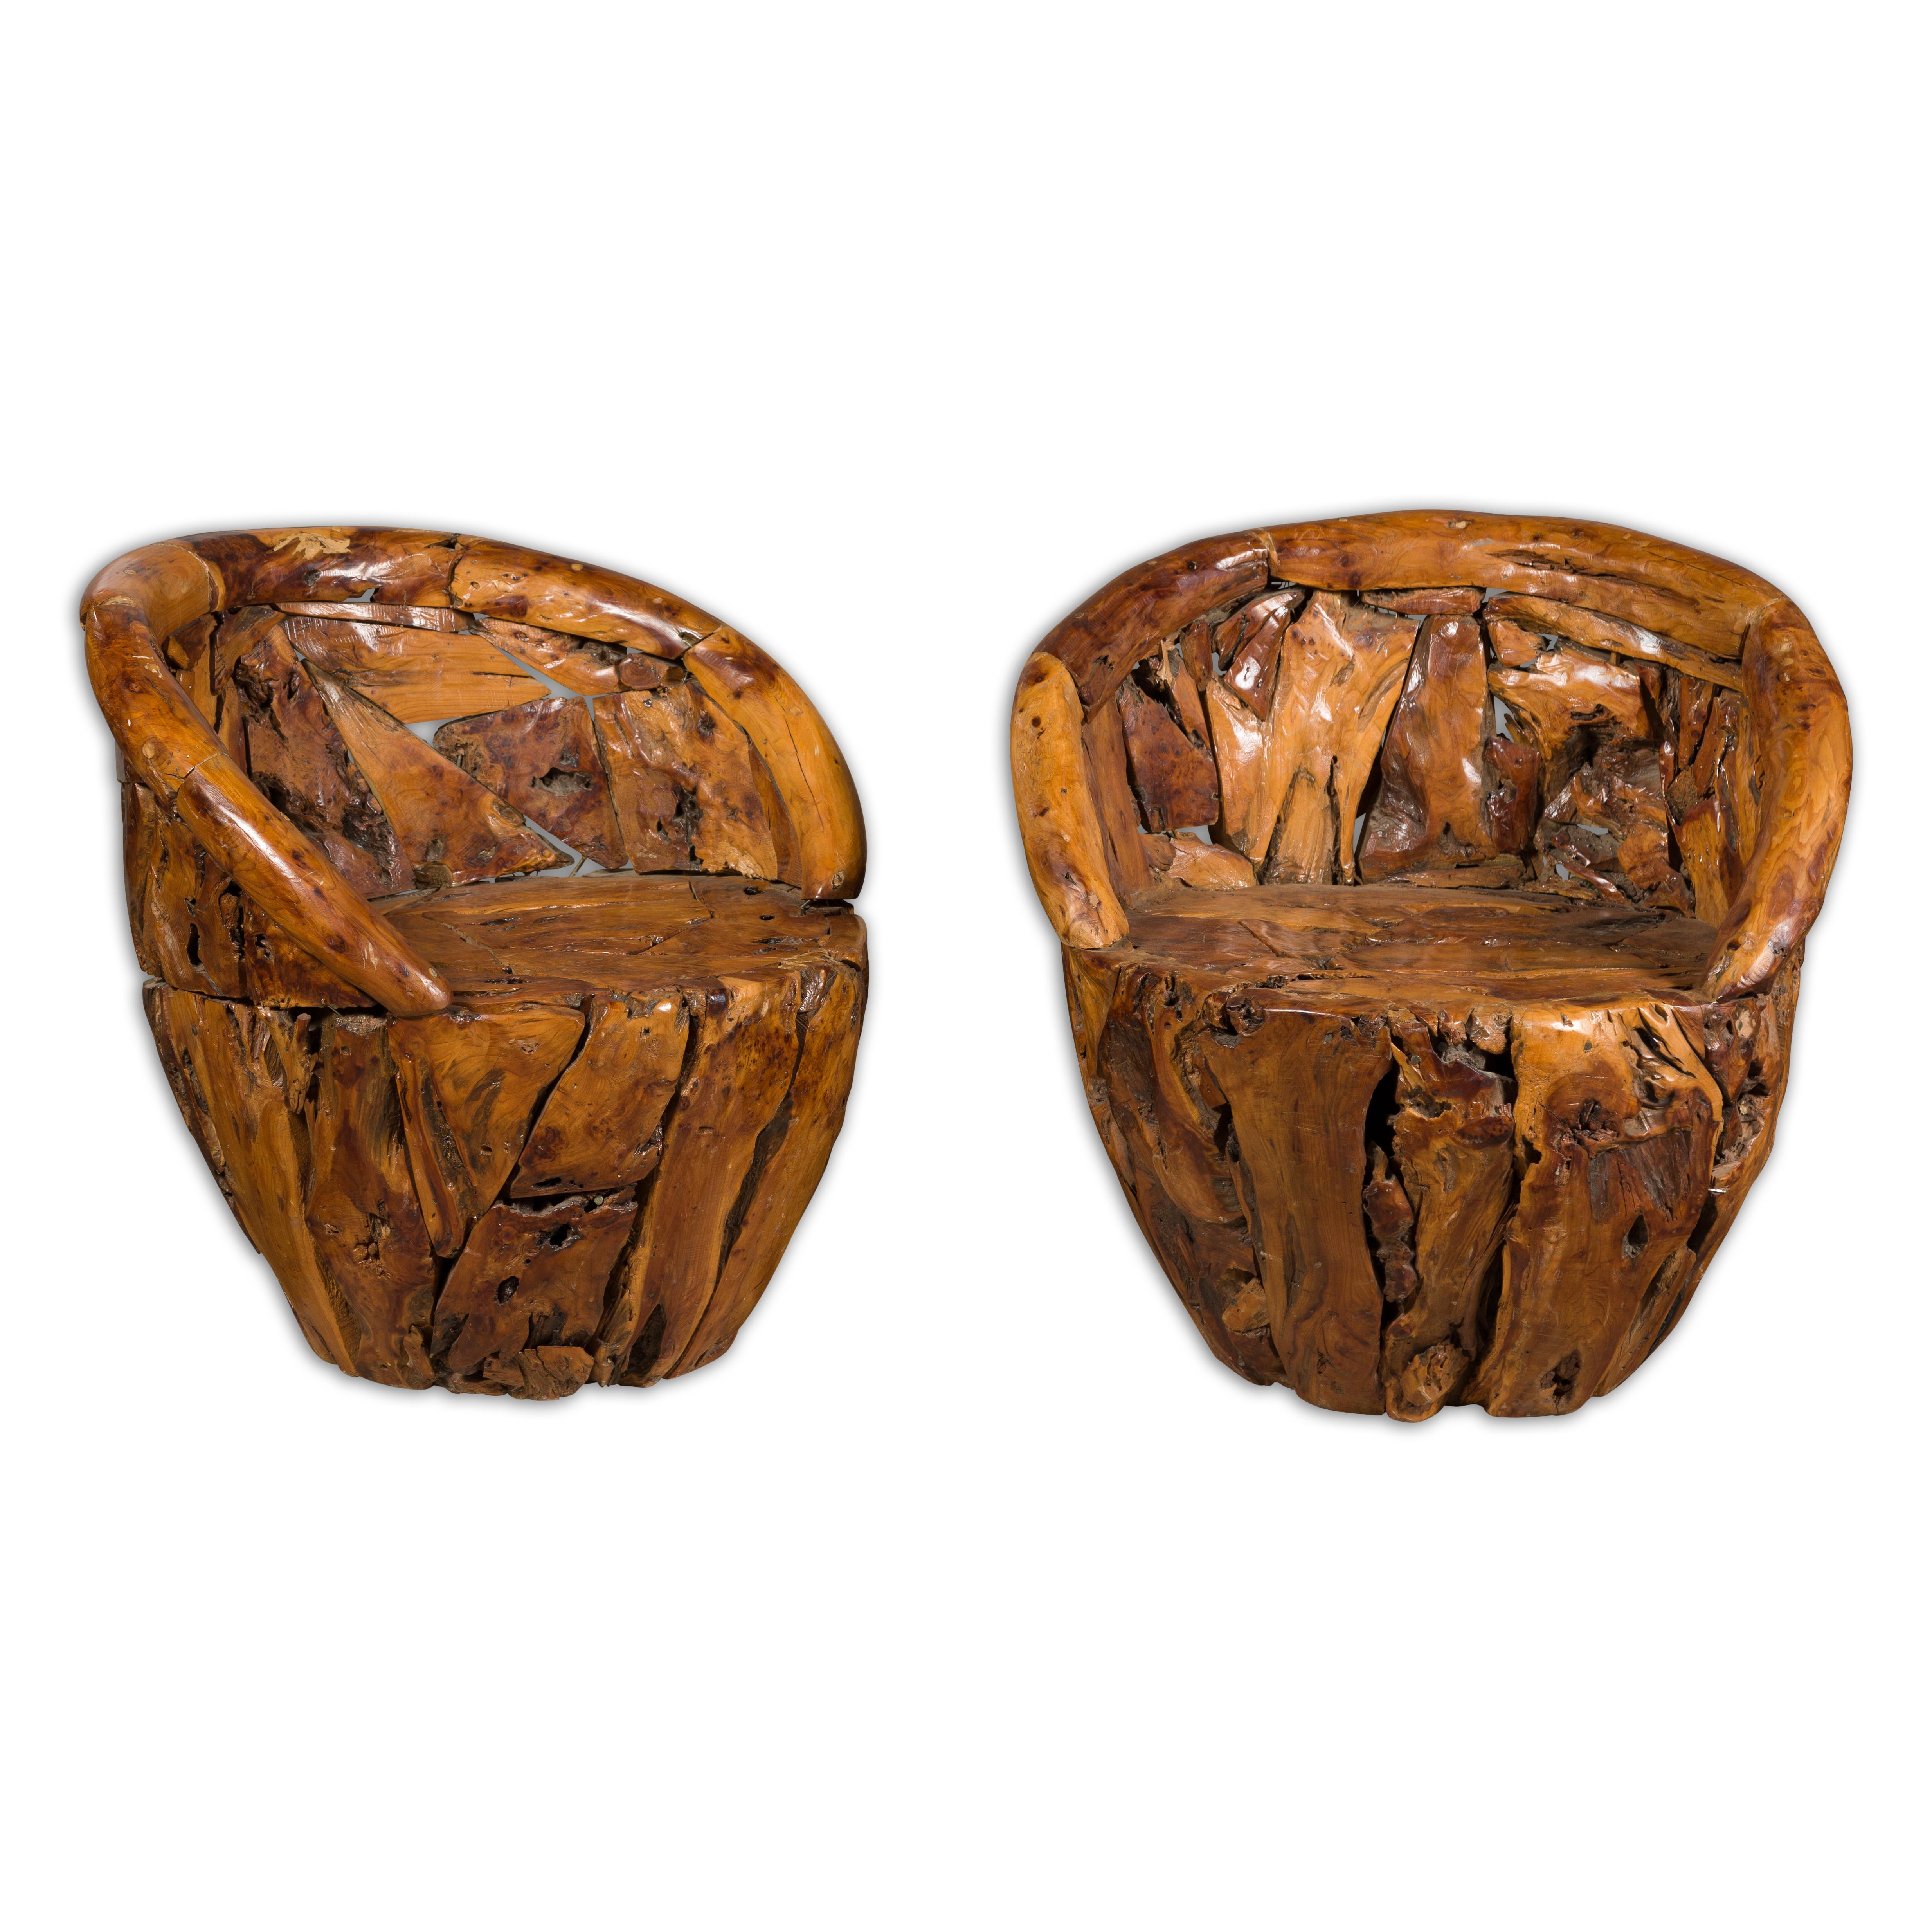 Une paire vintage de fauteuils en bois de racines américaines avec des dossiers enveloppants et un caractère rustique. Découvrez l'allure brute de la nature et de l'artisanat avec cette paire de fauteuils vintage en bois de racines américaines.